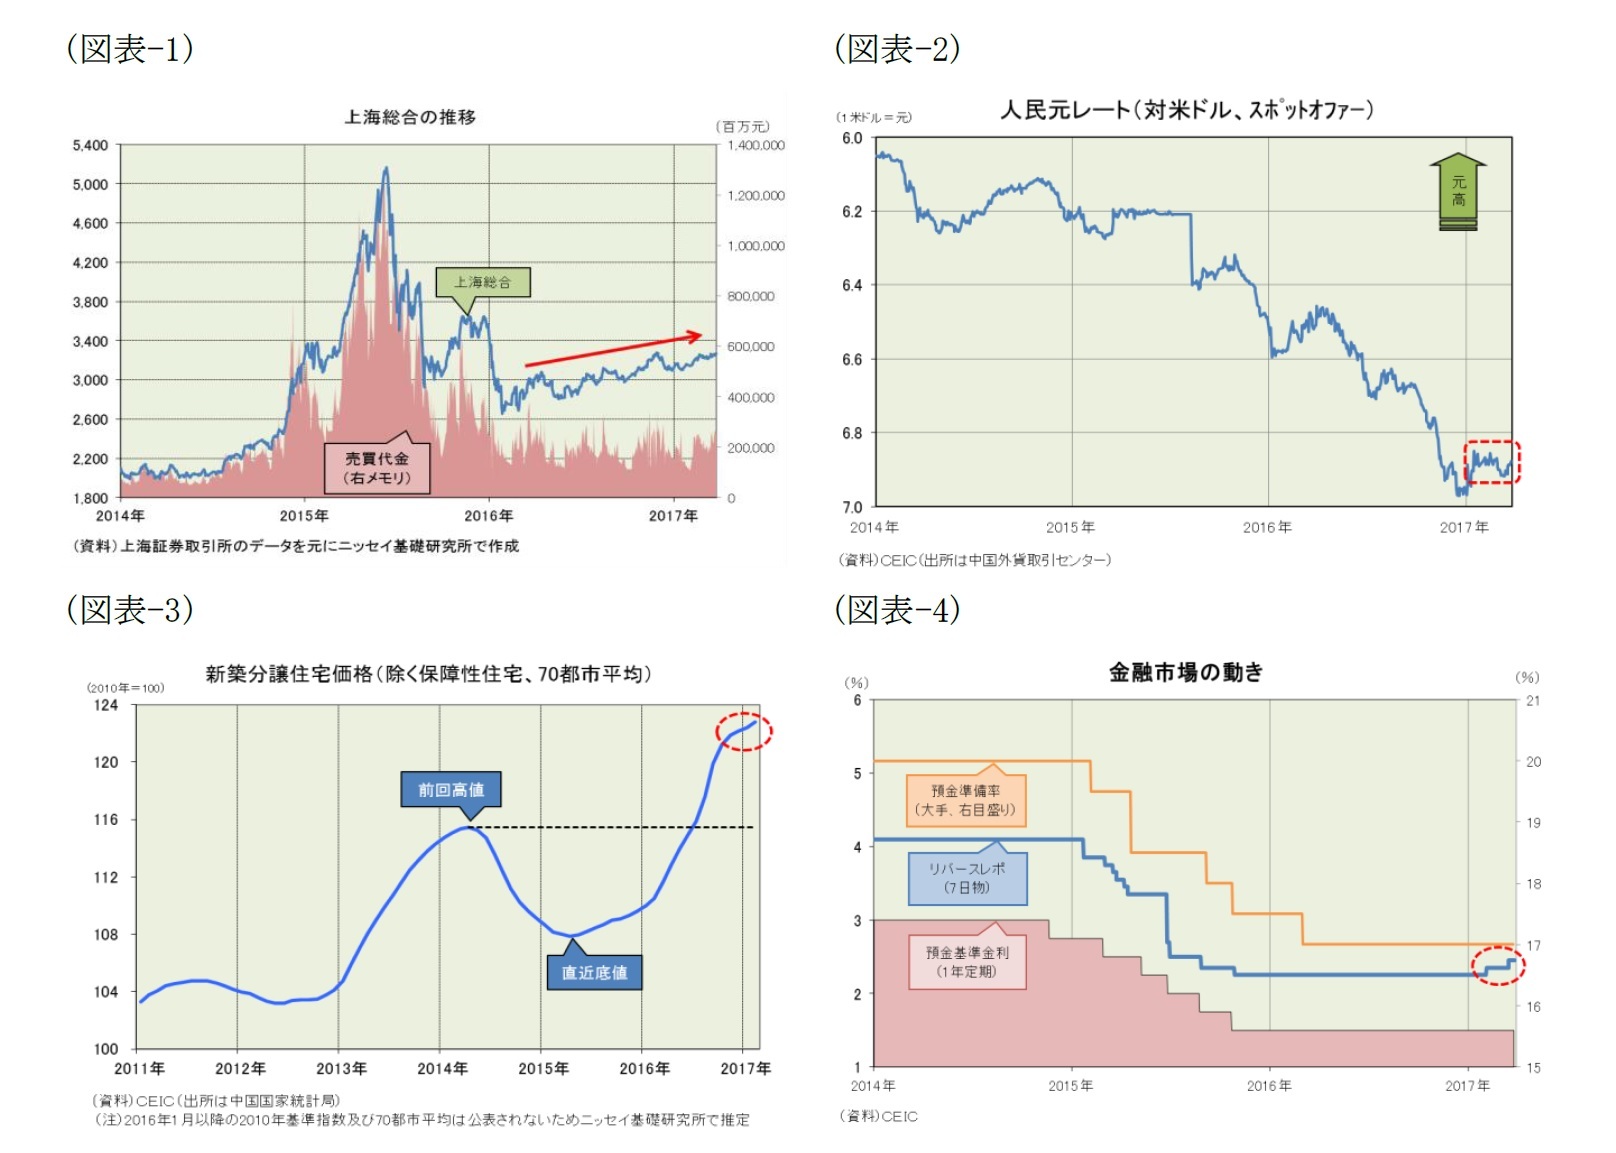 （図表-1）上海総合の推移/（図表-2）人民元レート(対米ドル、スポットオファー)/（図表-3）新築分譲住宅価格(除く保障性住宅、70都市平均)/（図表-4）金融市場の動き